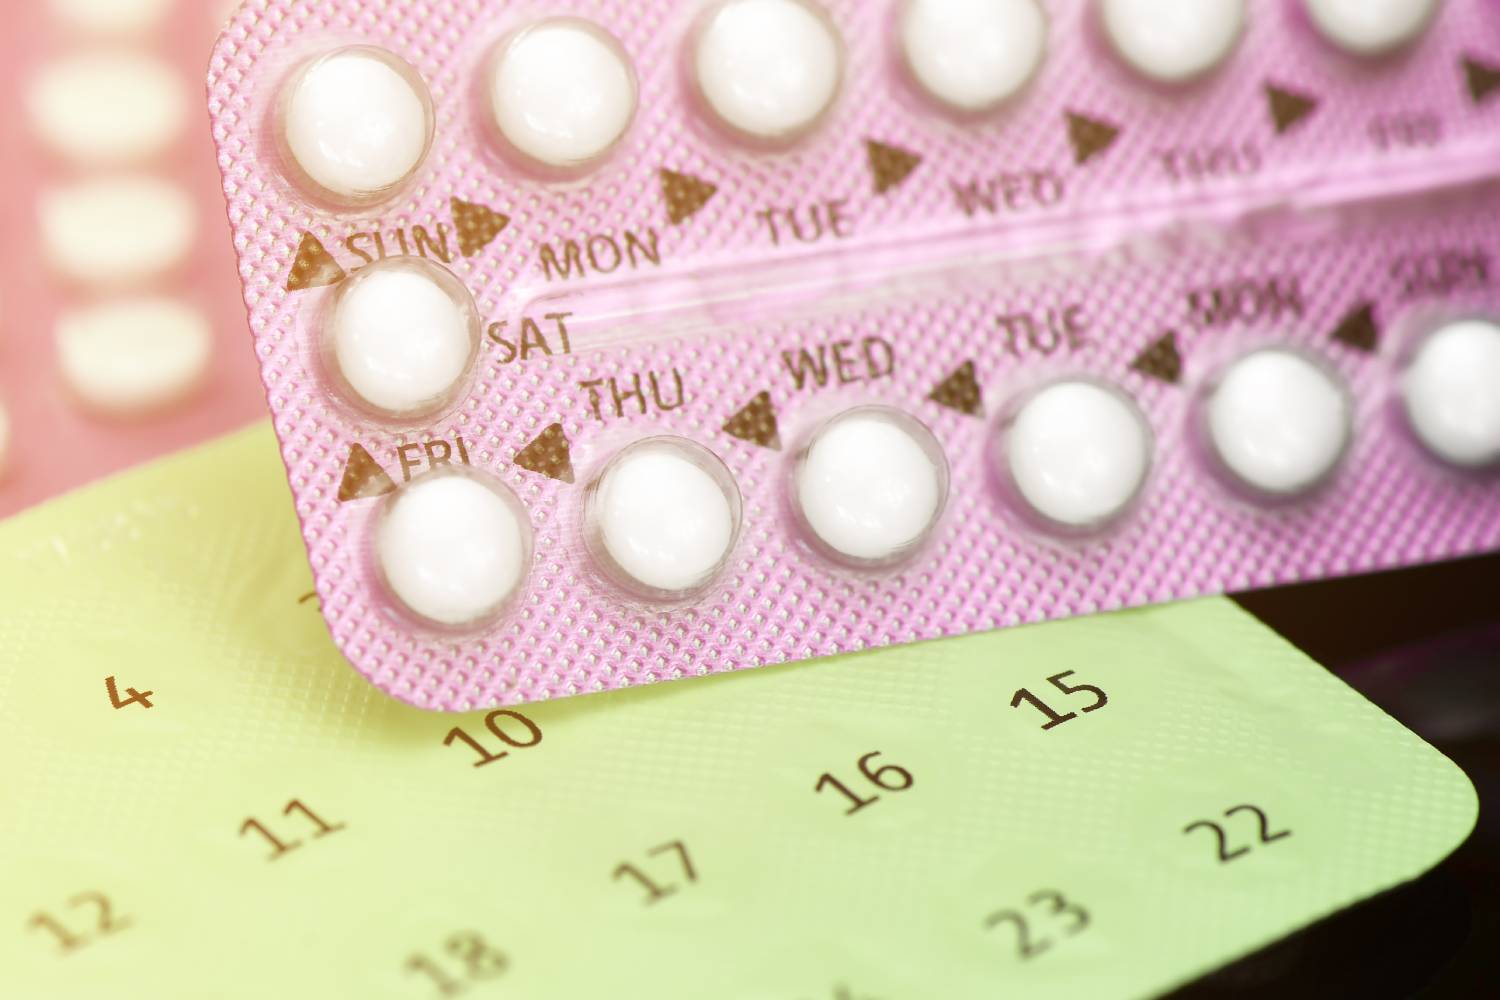 Agenzia Italiana del Farmaco ha iniziato l’iter per la pillola anticoncezionale gratis alle under 25